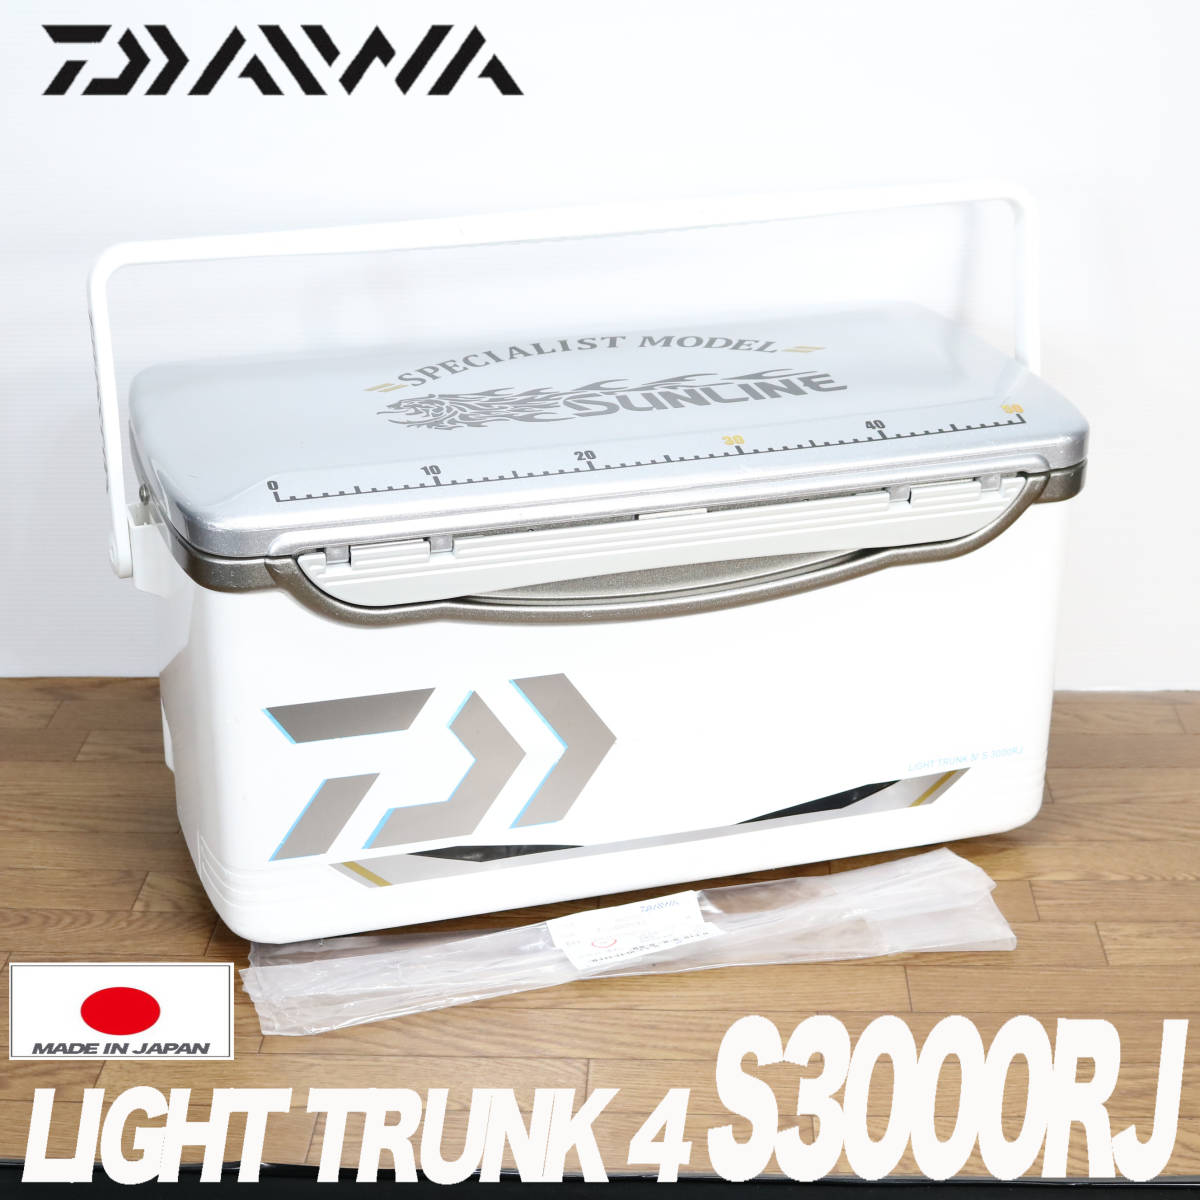 程度良好 ダイワ (DAIWA) ライトトランク4 S-3000RJ スーパー軽量 クーラーボックス クールボックス